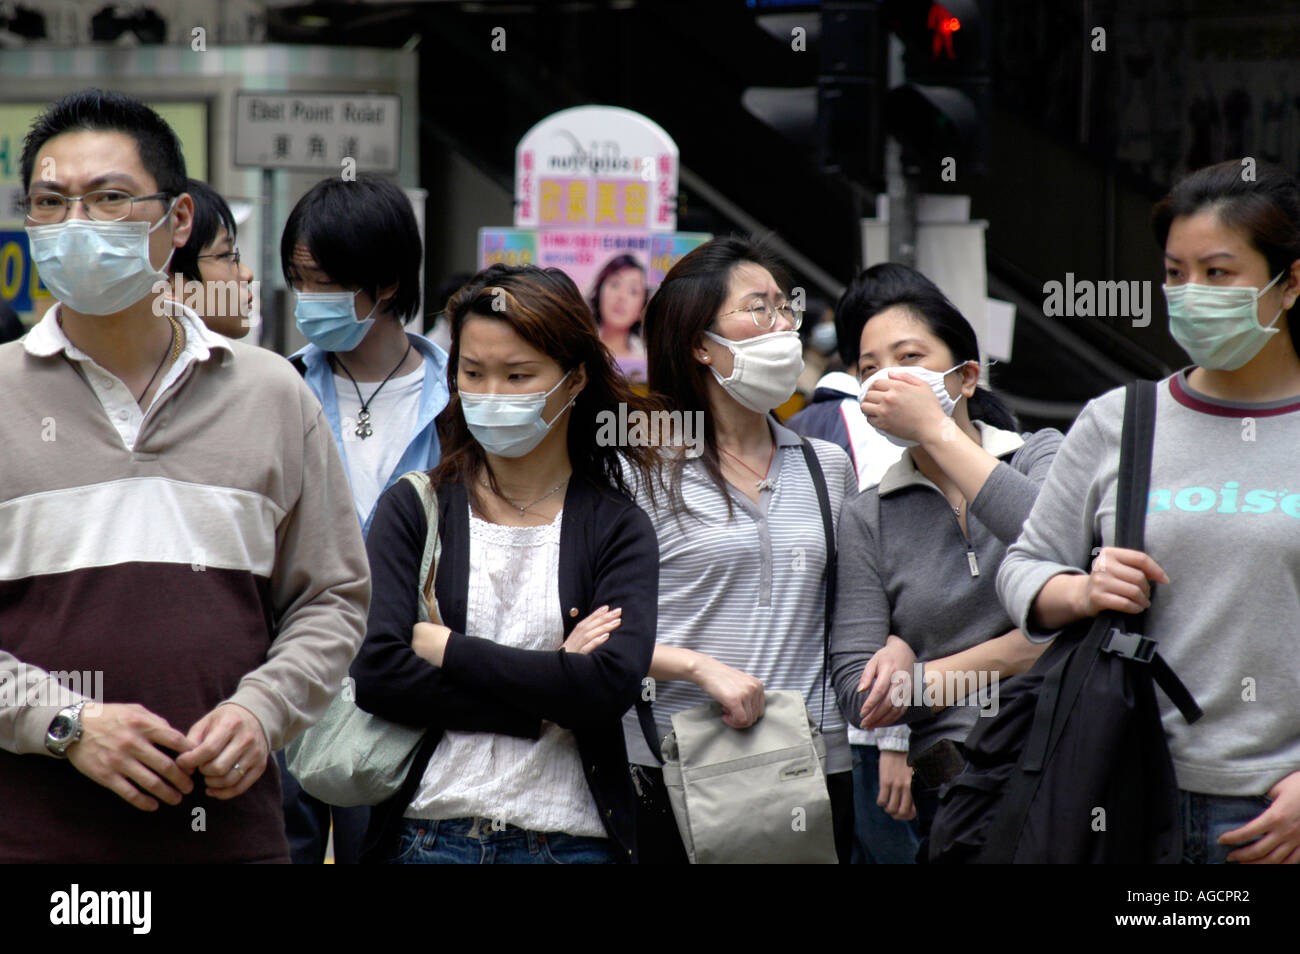 Face masks SARS outbreak Hong Kong Stock Photo: 8097009 - Alamy1300 x 954